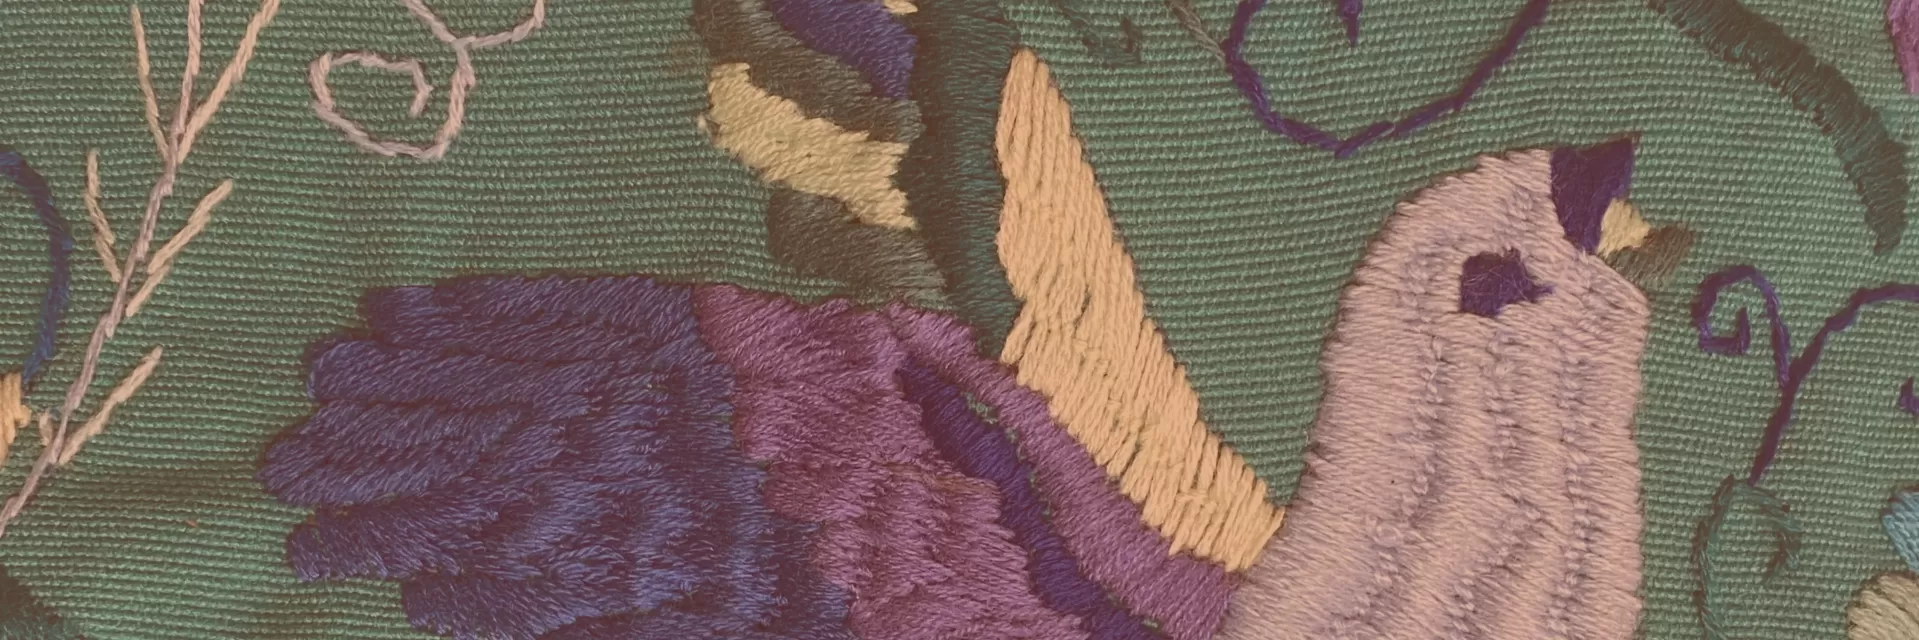 Bird textile pattern.